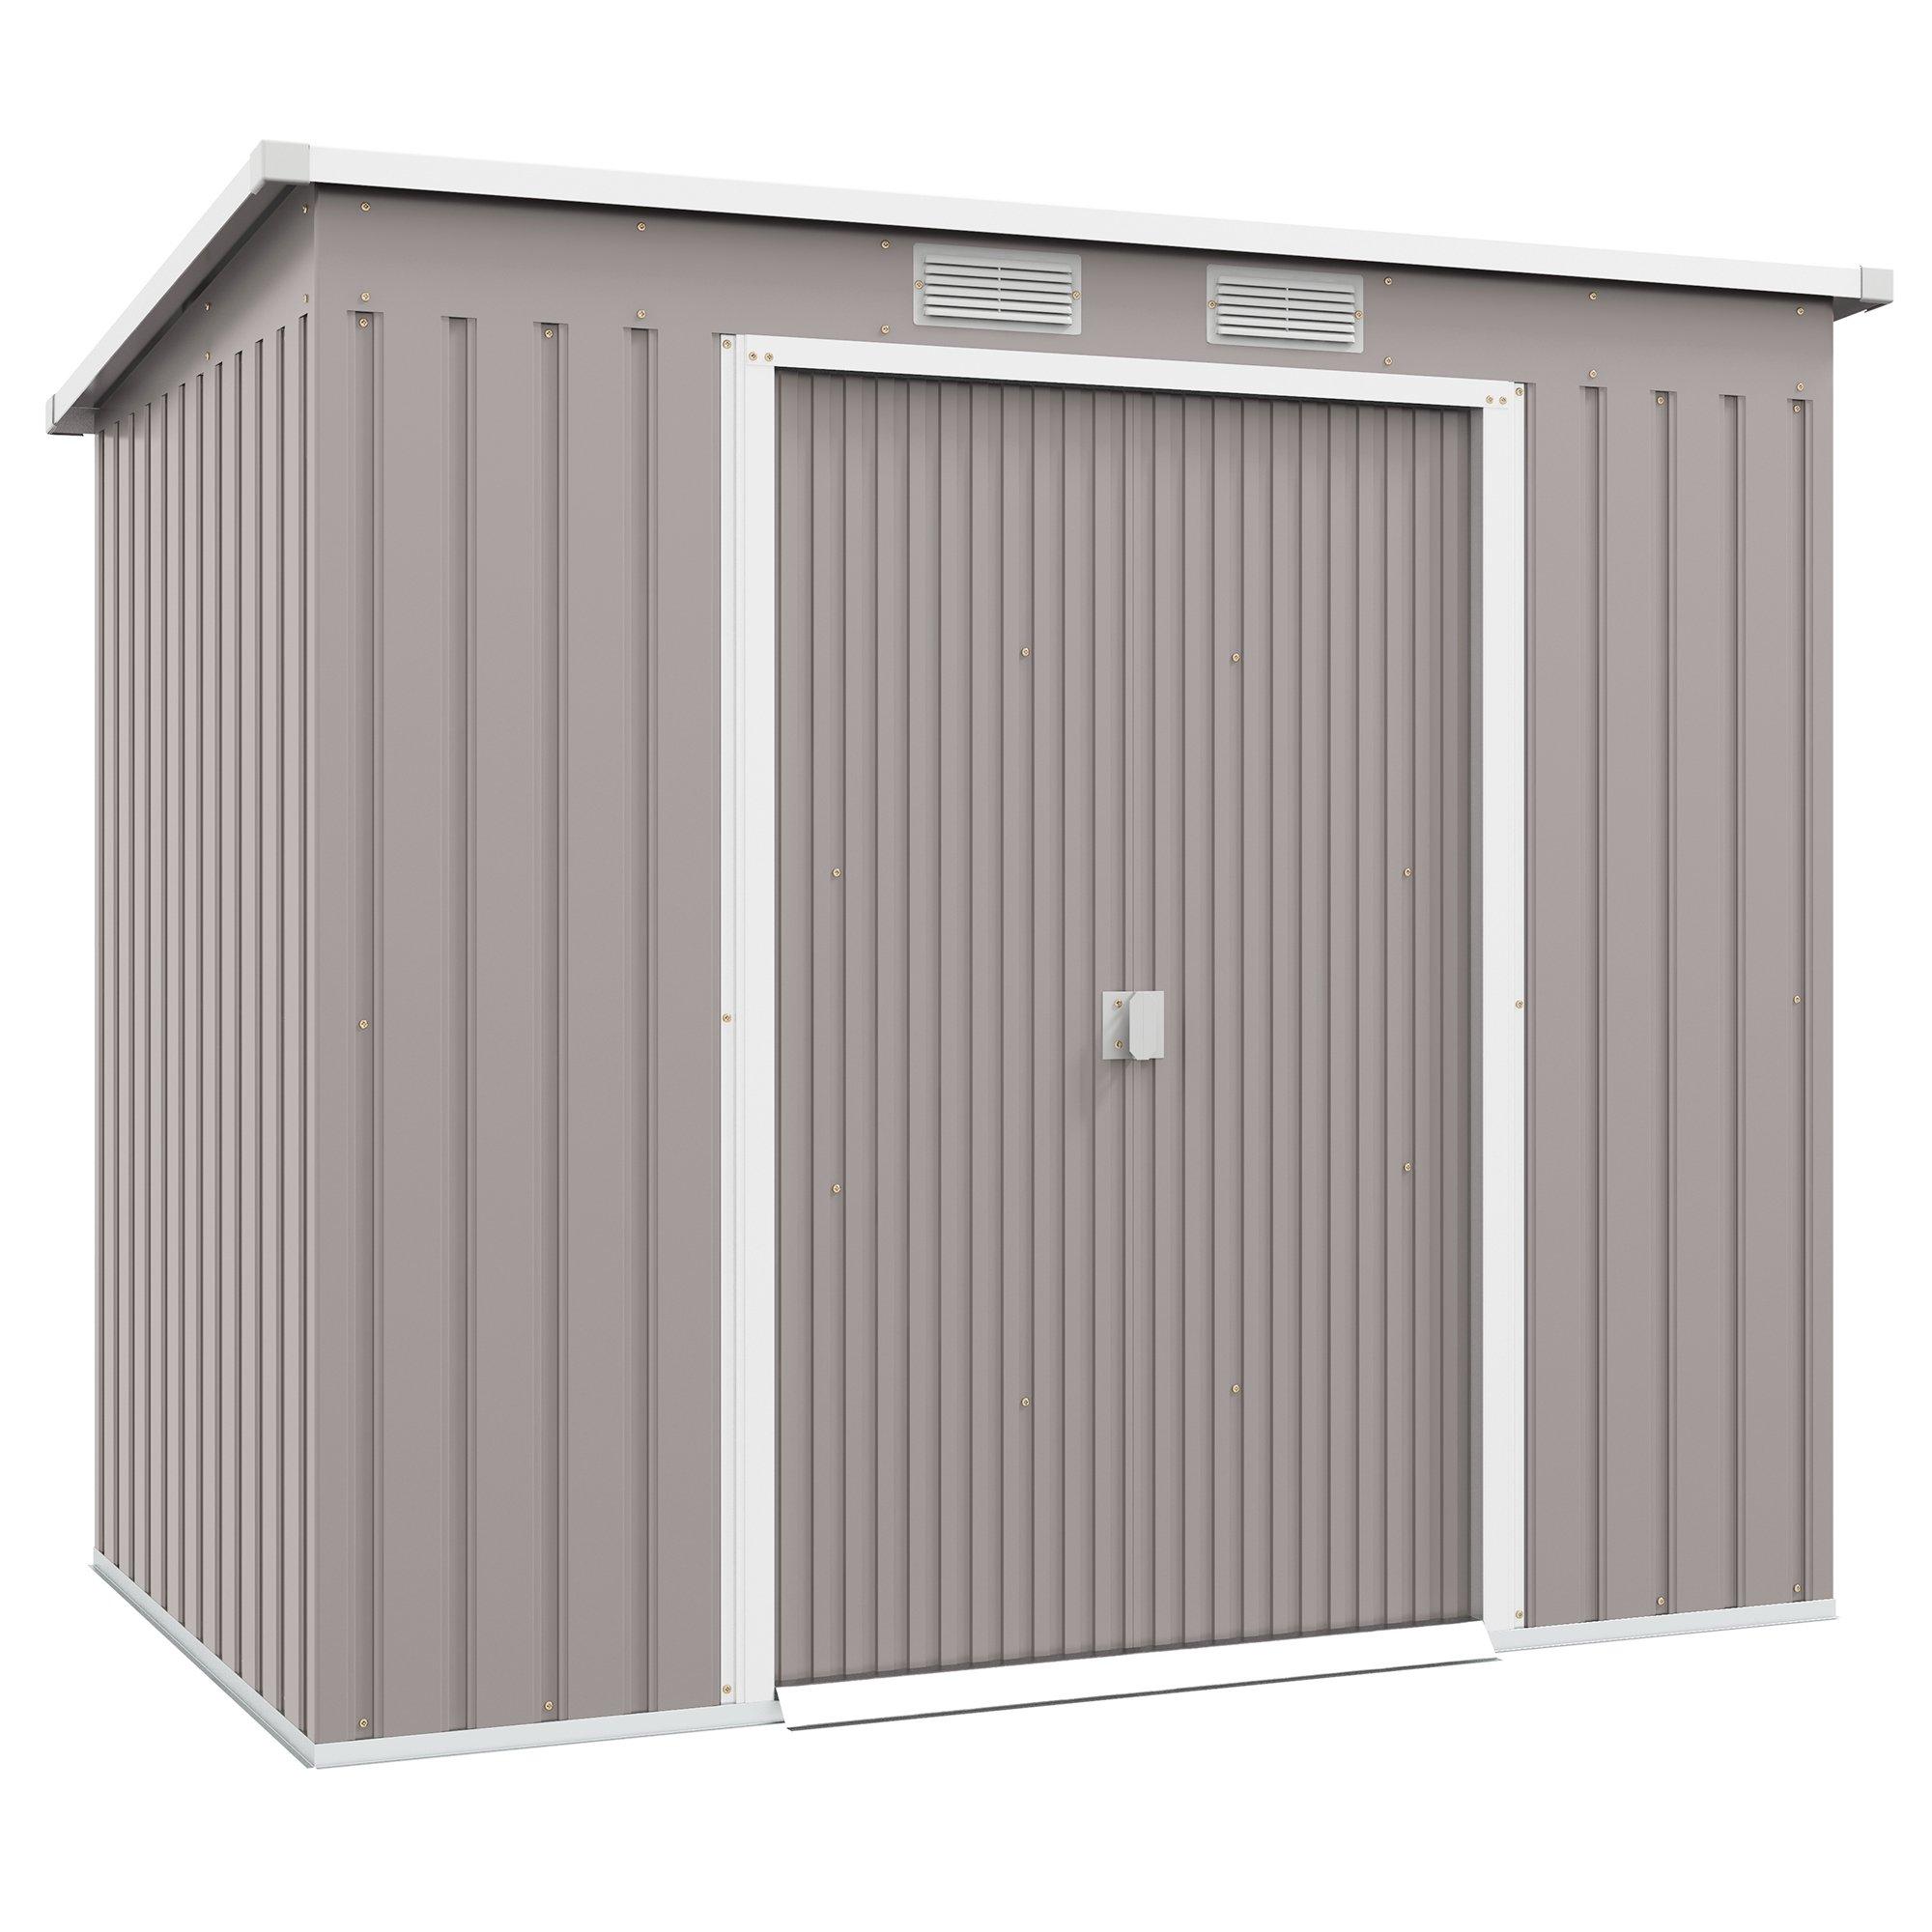 7 x 4ft Metal Garden Storage Shed with Double Door & Ventilation